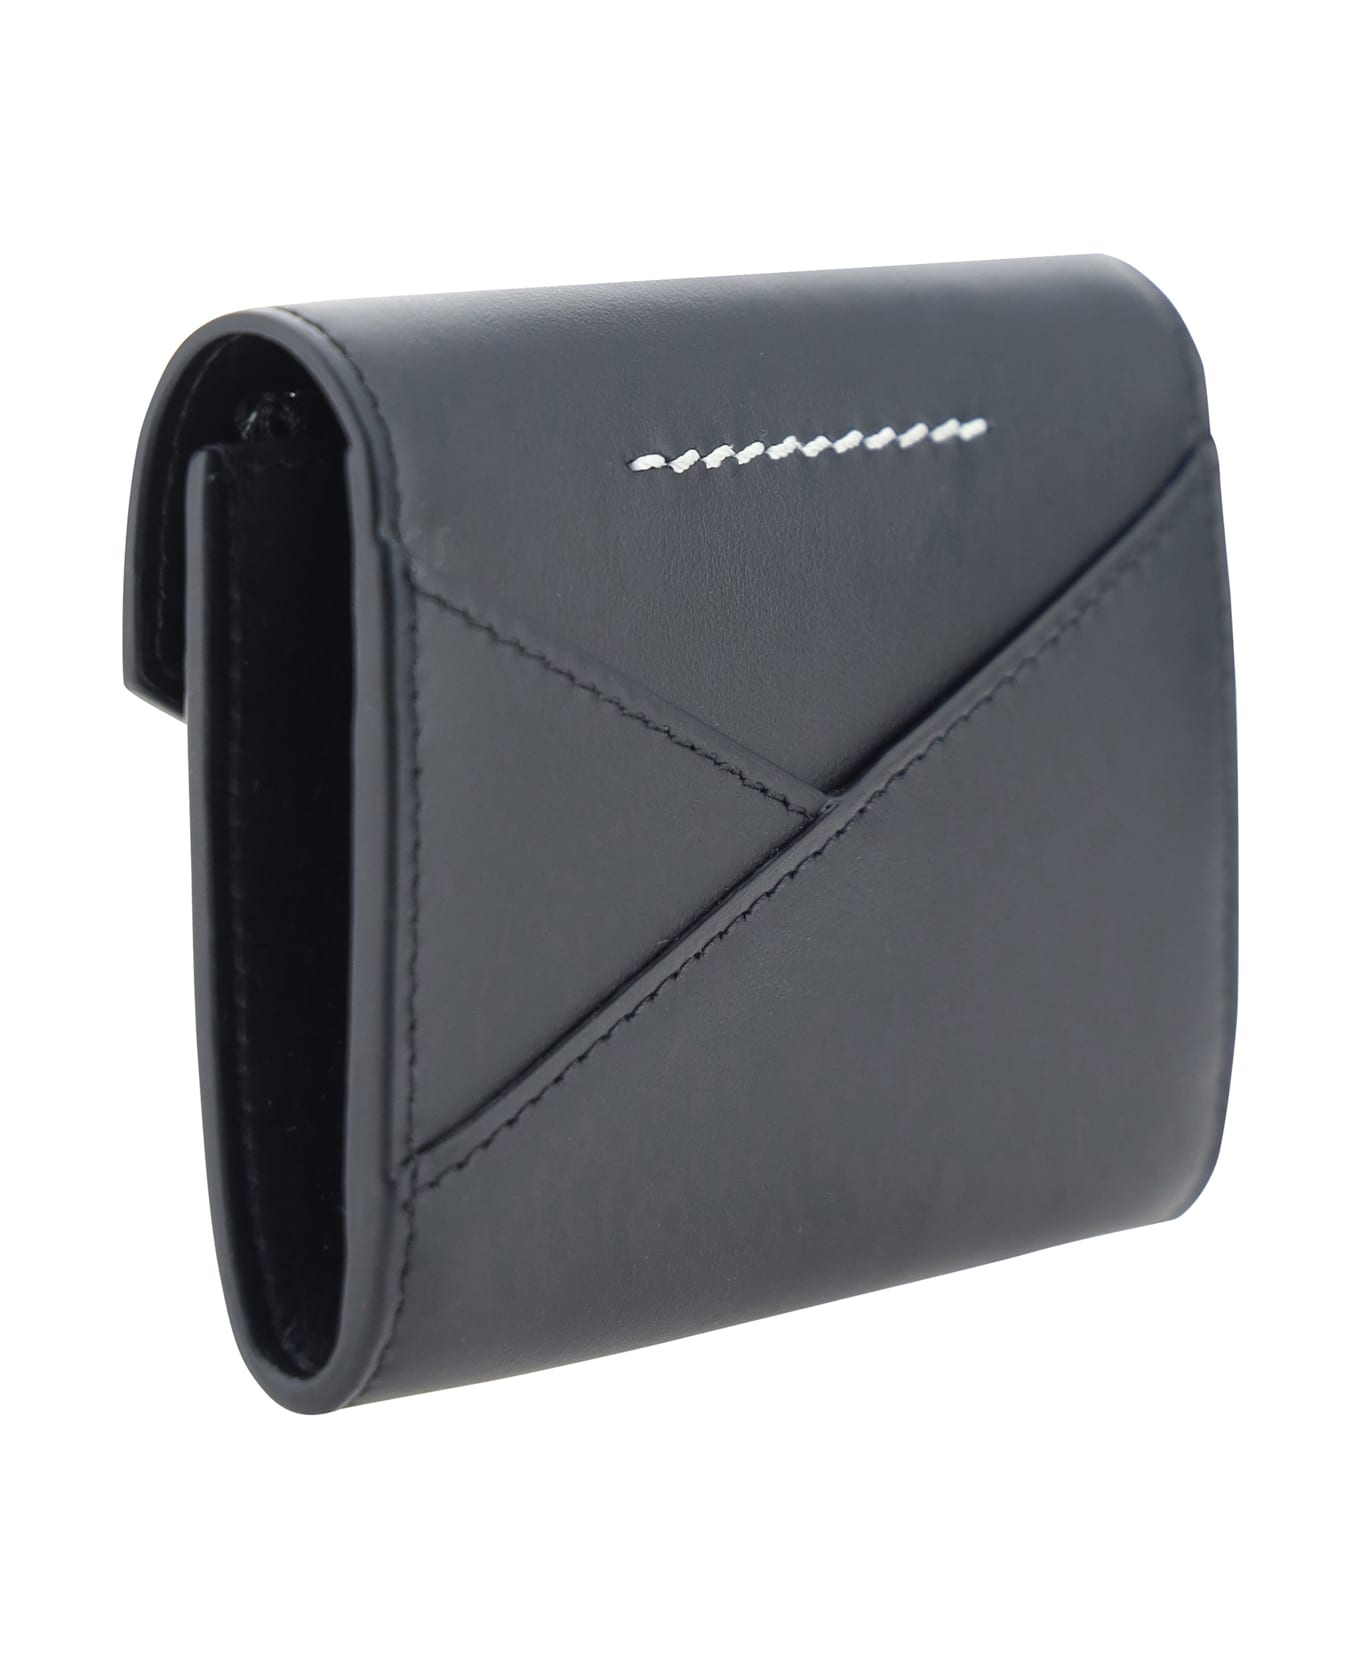 MM6 Maison Margiela Wallet - Black 財布